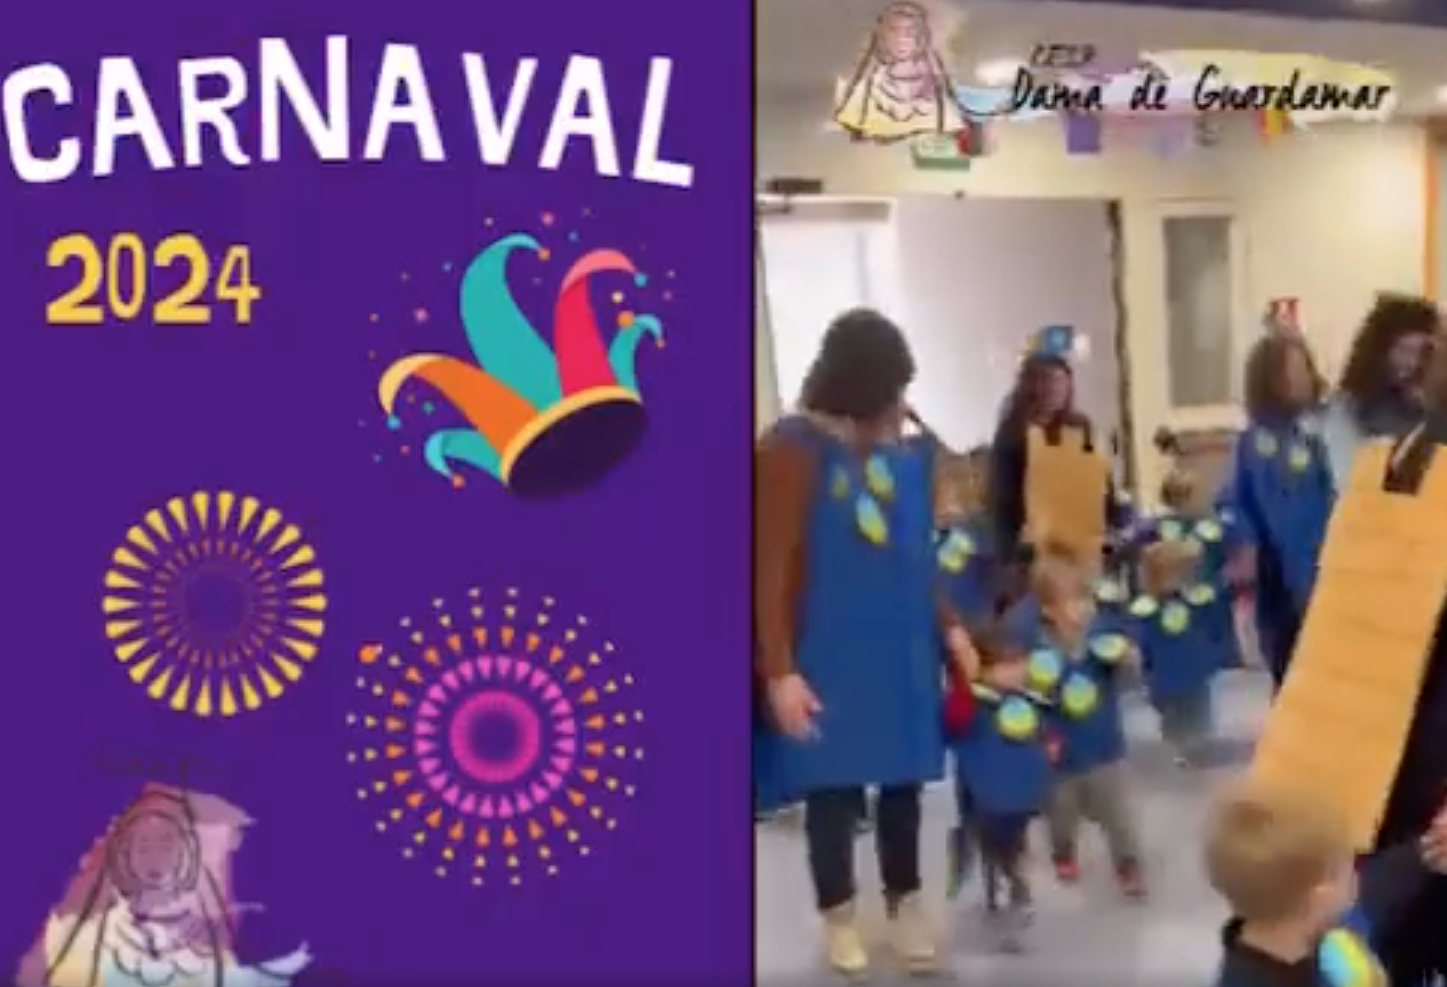 Carnaval 2024 ceip Dama de Guardamar